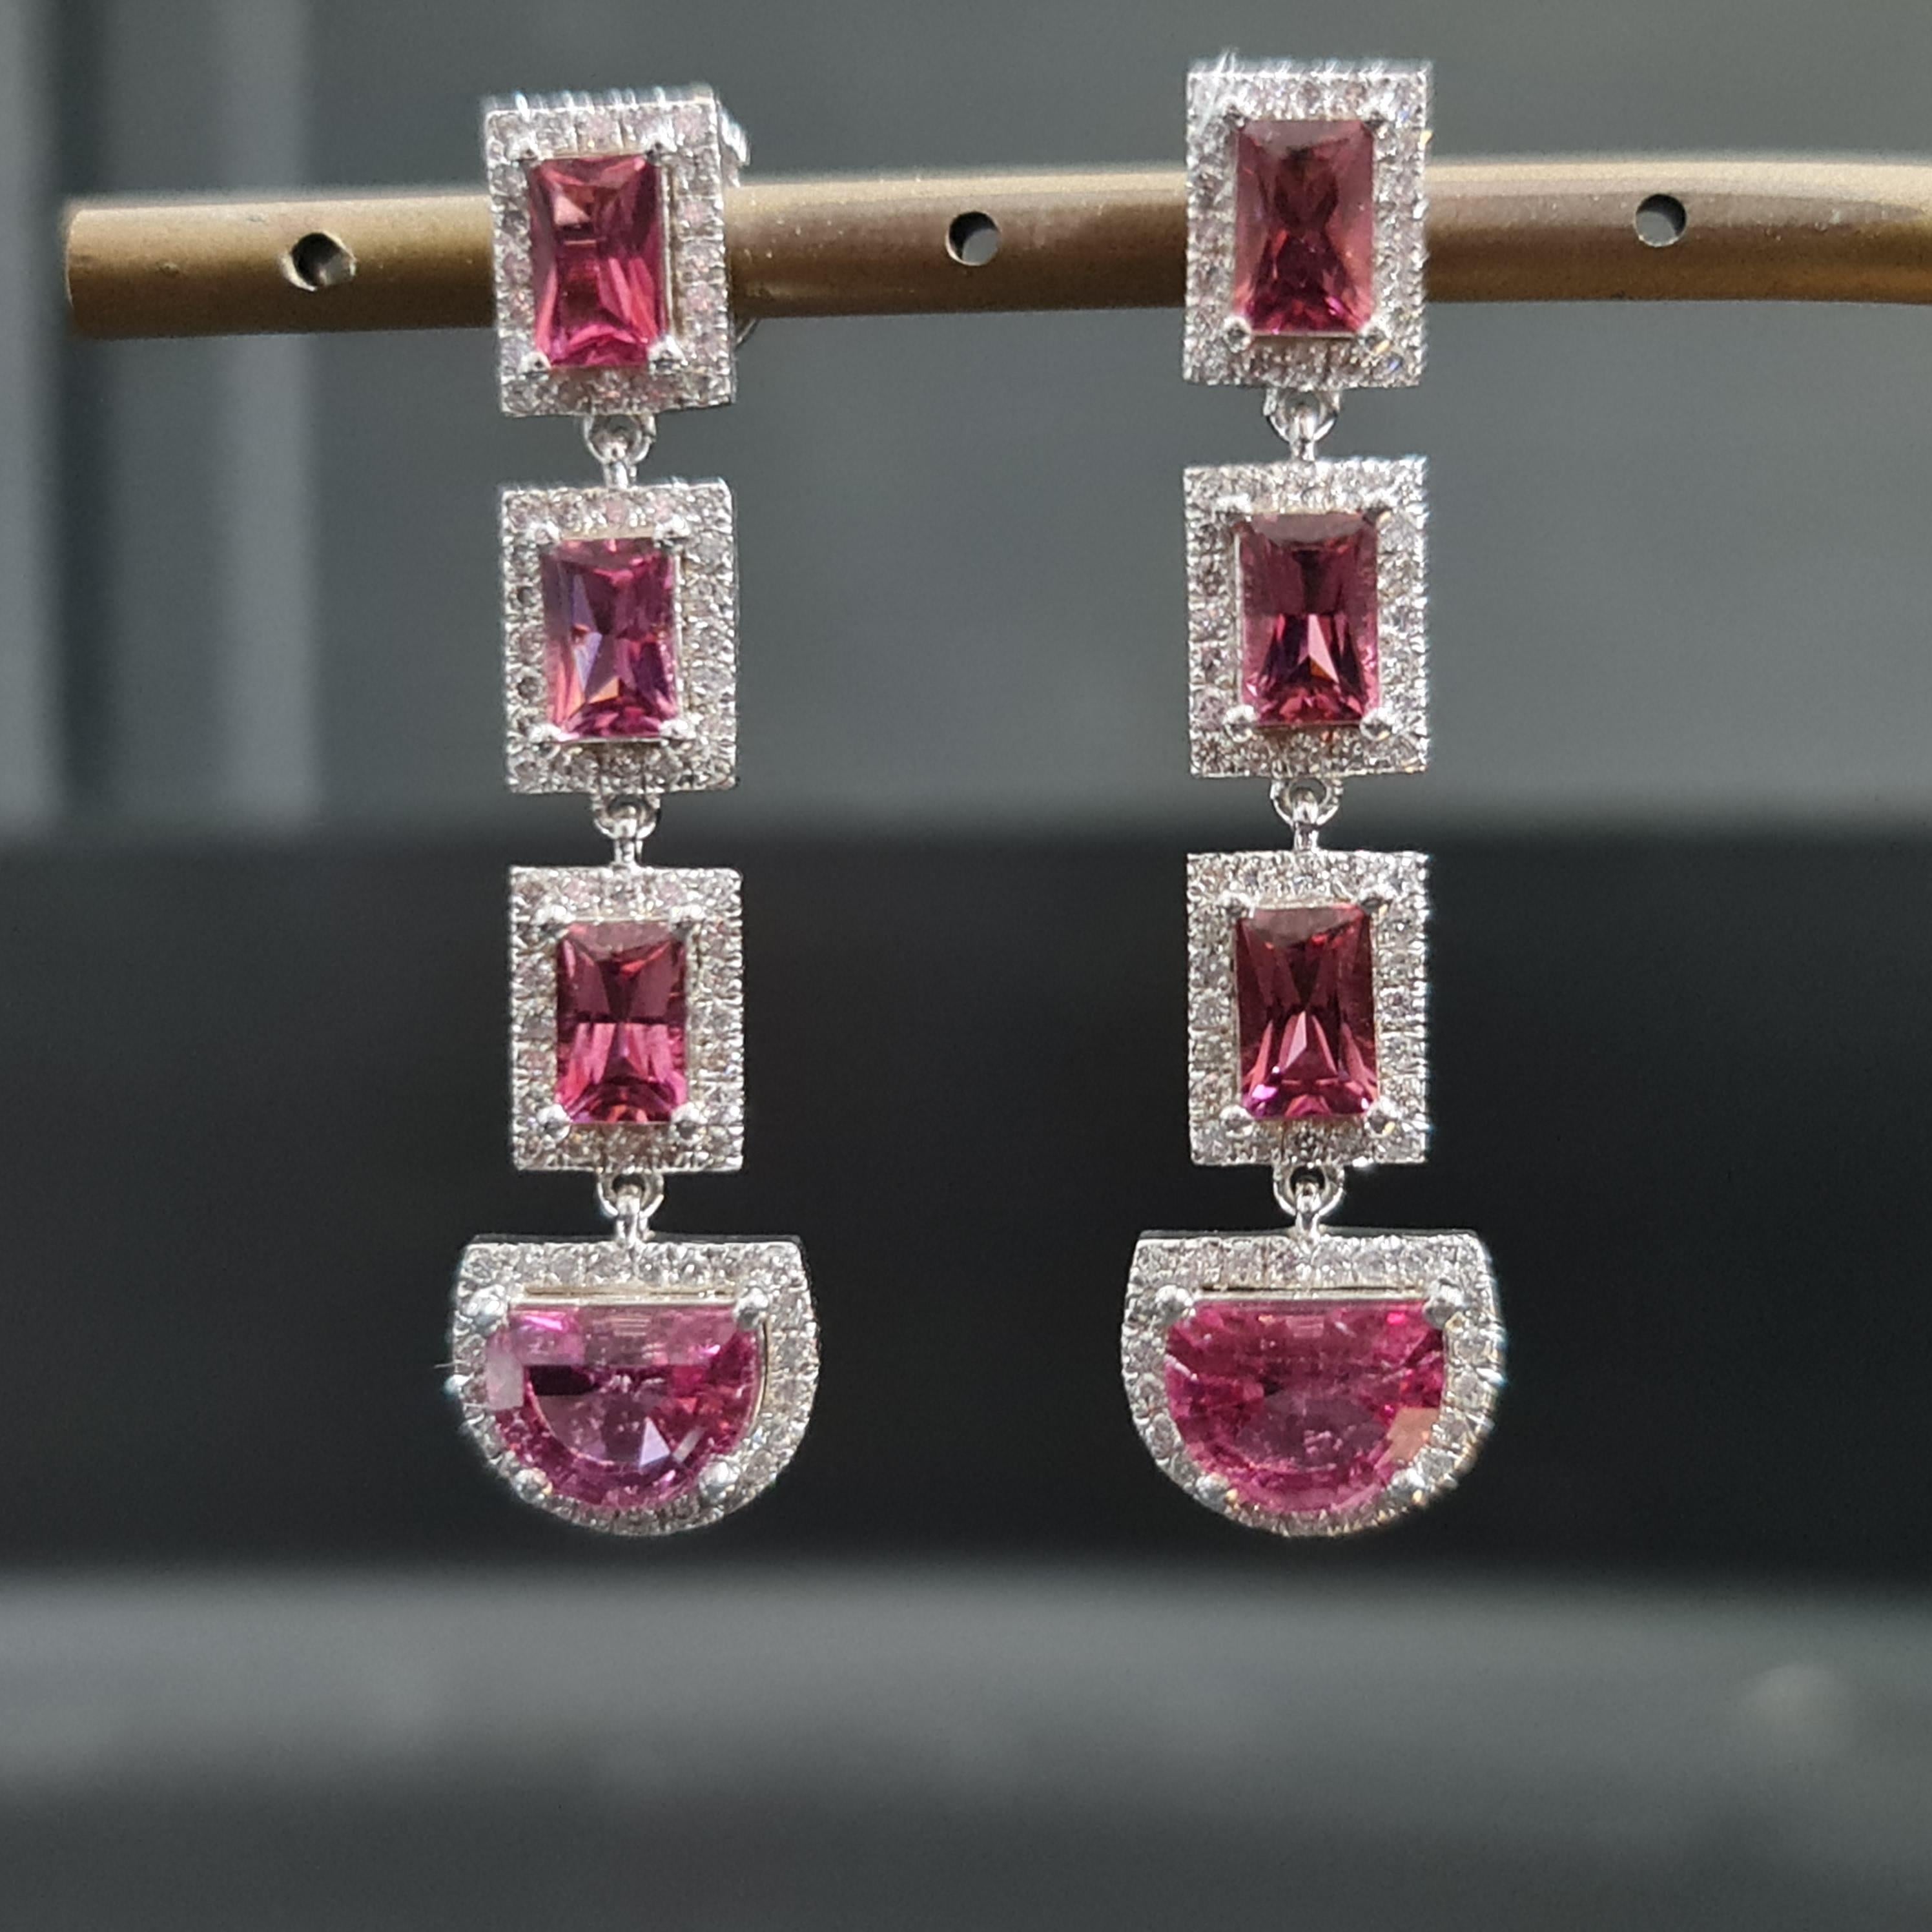 Unsere exquisiten Ohrringe aus rosafarbenem Turmalin sind eine wahre Verkörperung von Eleganz und Raffinesse. Diese mit äußerster Präzision gefertigten Ohrringe werden jeden Betrachter mit ihrer faszinierenden Schönheit in ihren Bann ziehen.

Jeder